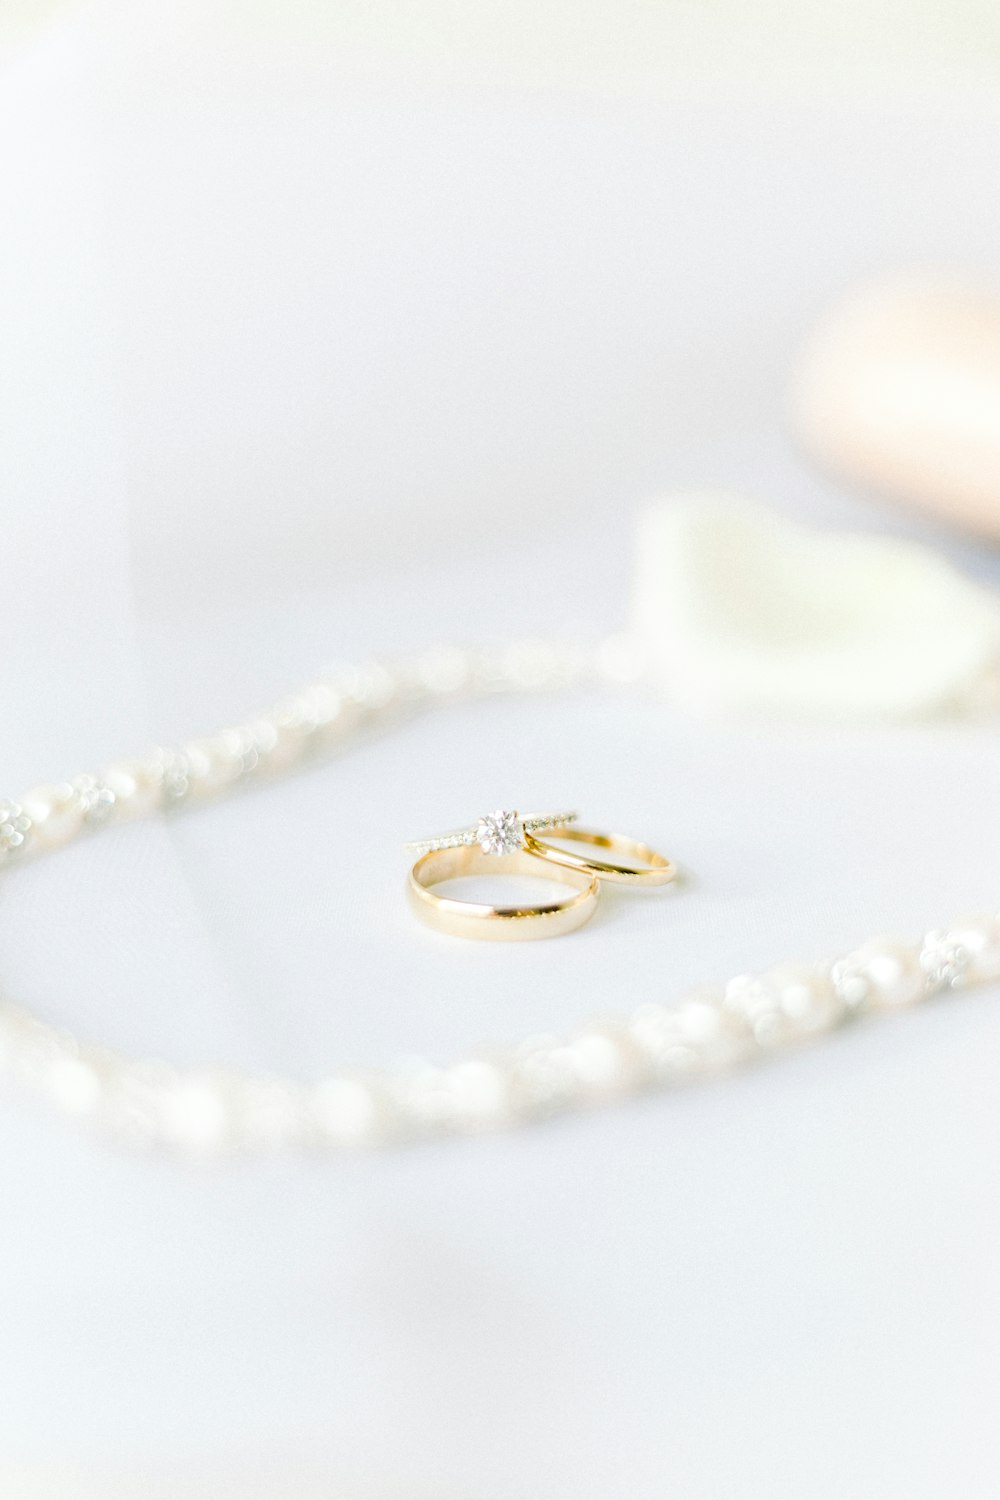 gold diamond ring on white textile